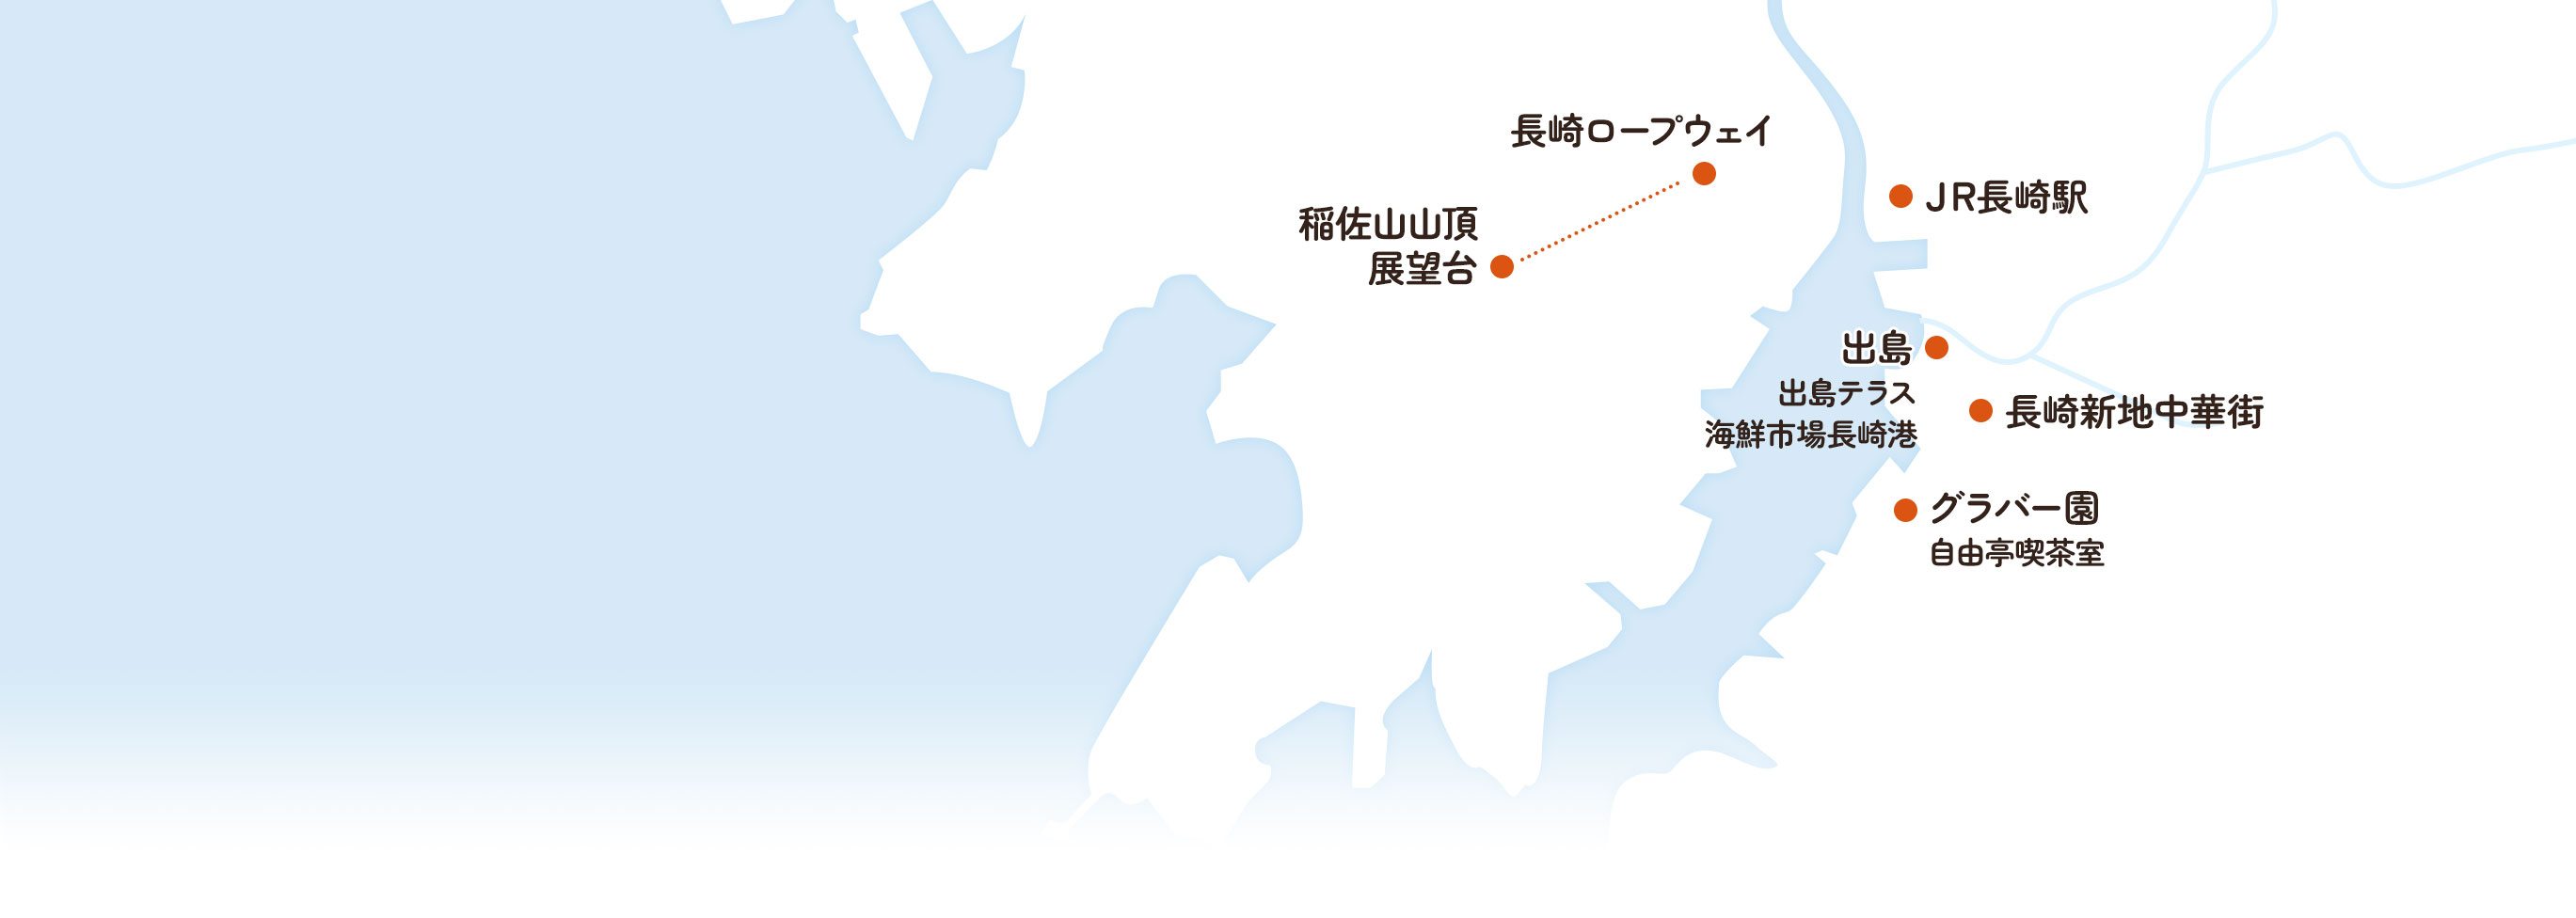 長崎市街地マップ